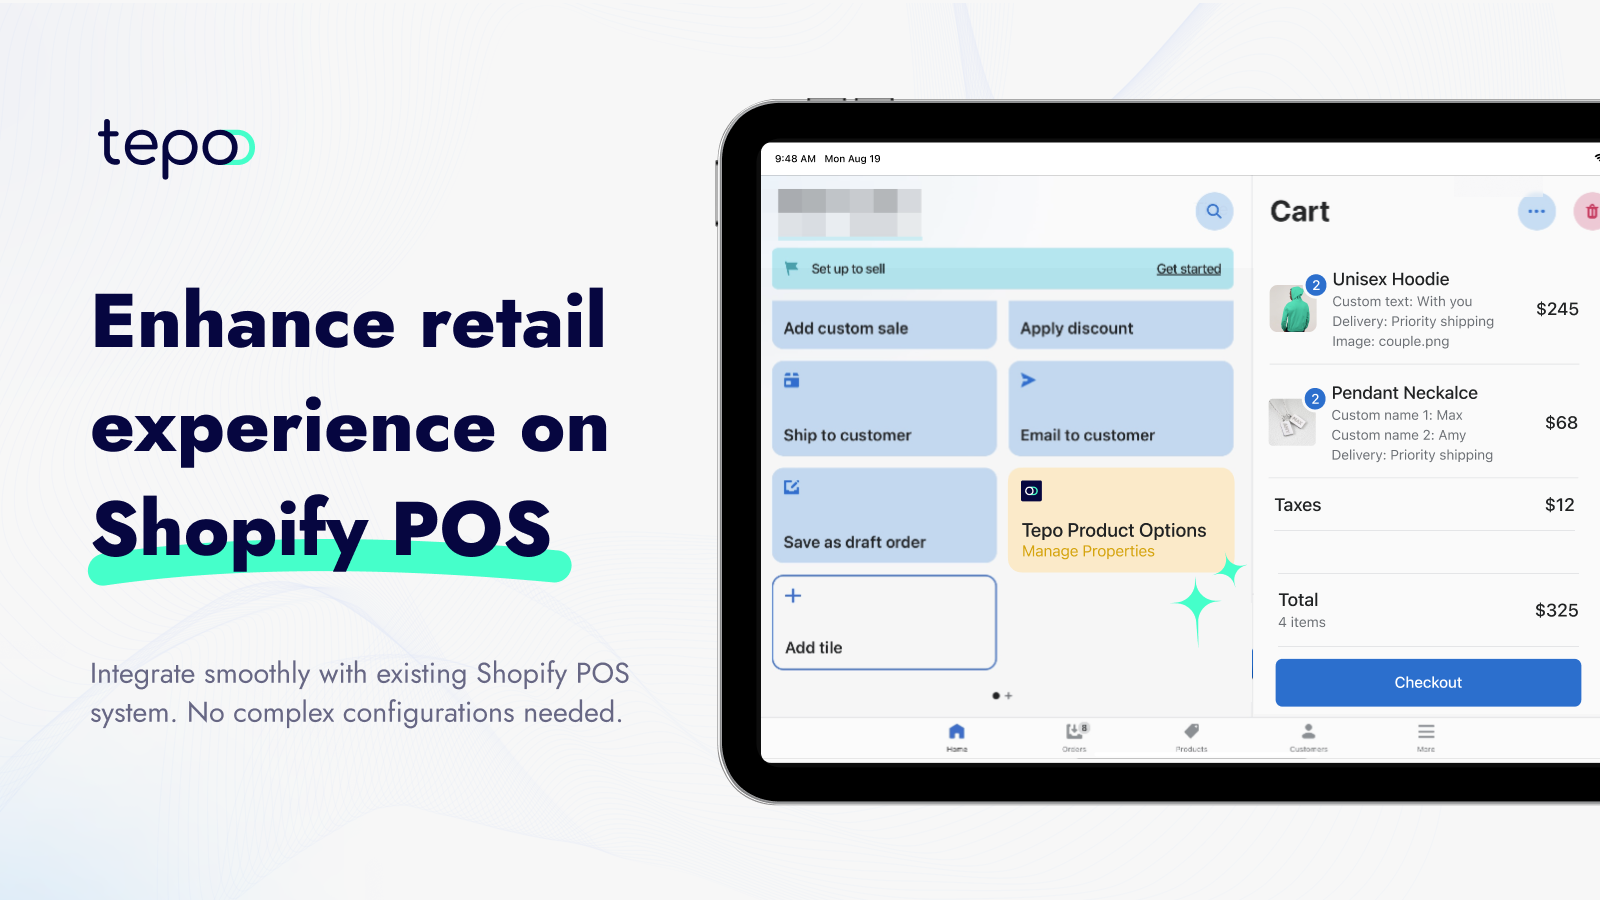 Melhore a experiência de varejo no Shopify POS